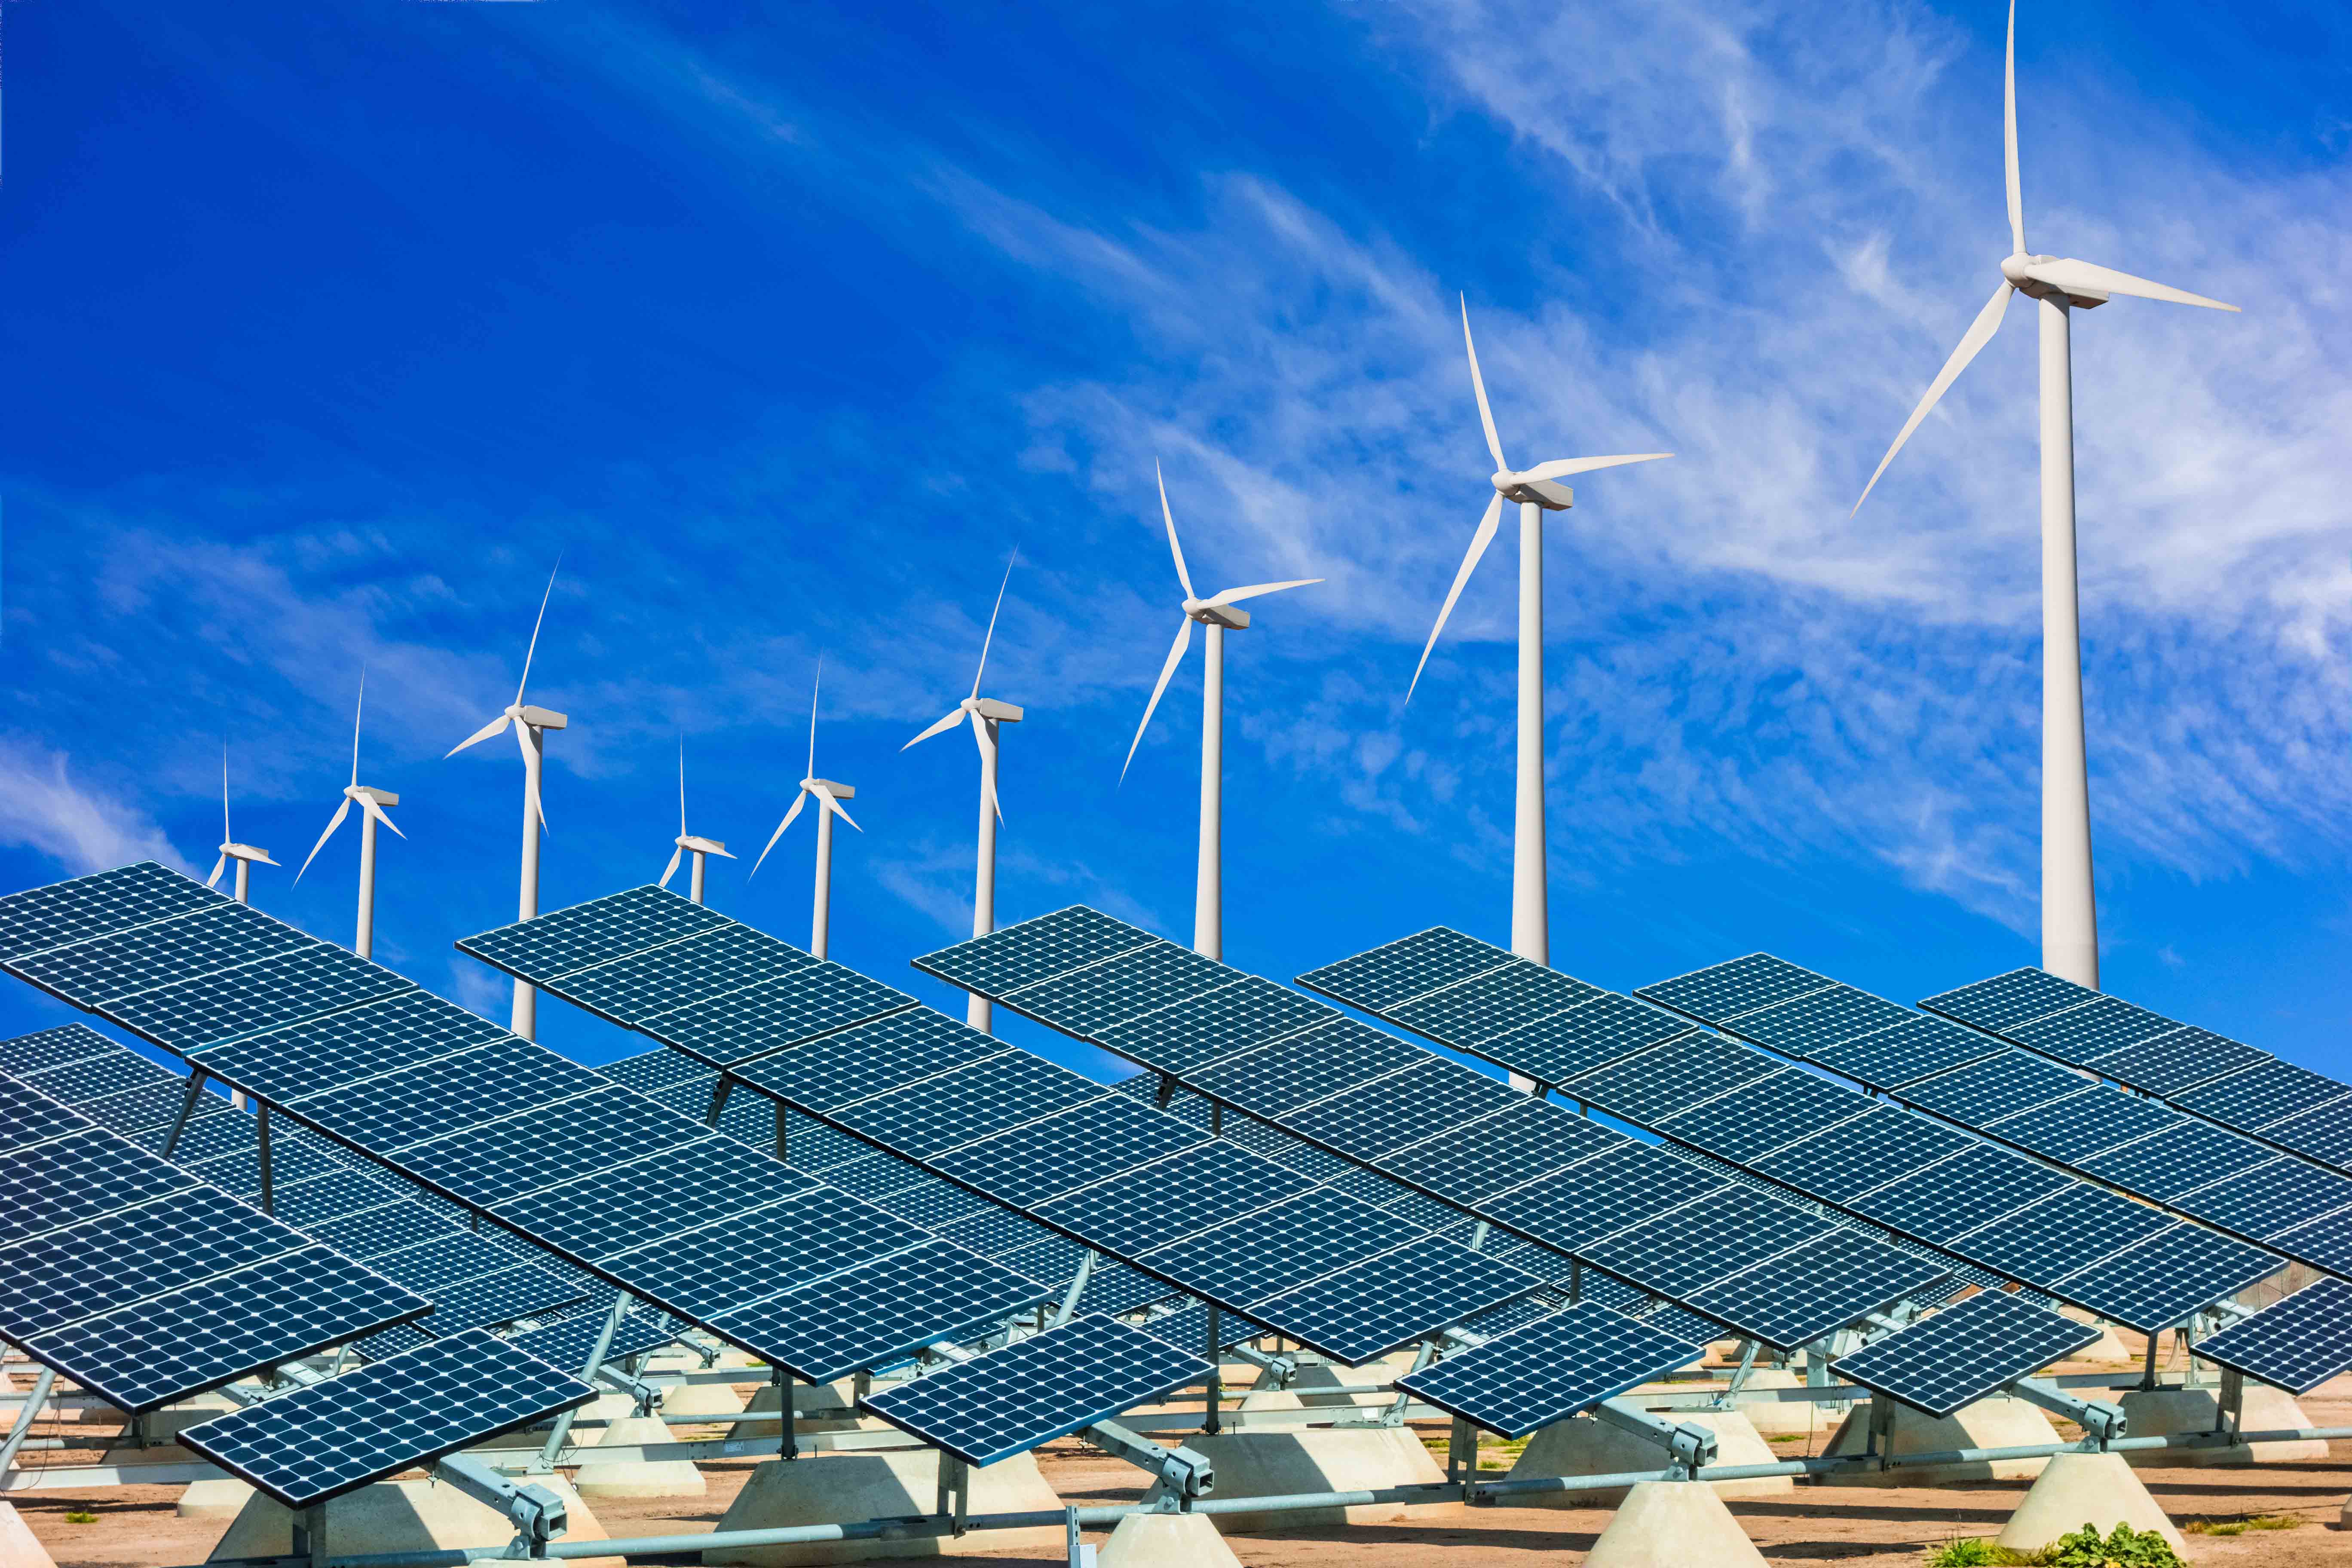 Атомные электростанции использующие альтернативные источники энергии. Возобновляемые источники энергии (ВИЭ). Солнечные ВИЭ. Ветряки и солнечные панели. Ветряные и солнечные электростанции.